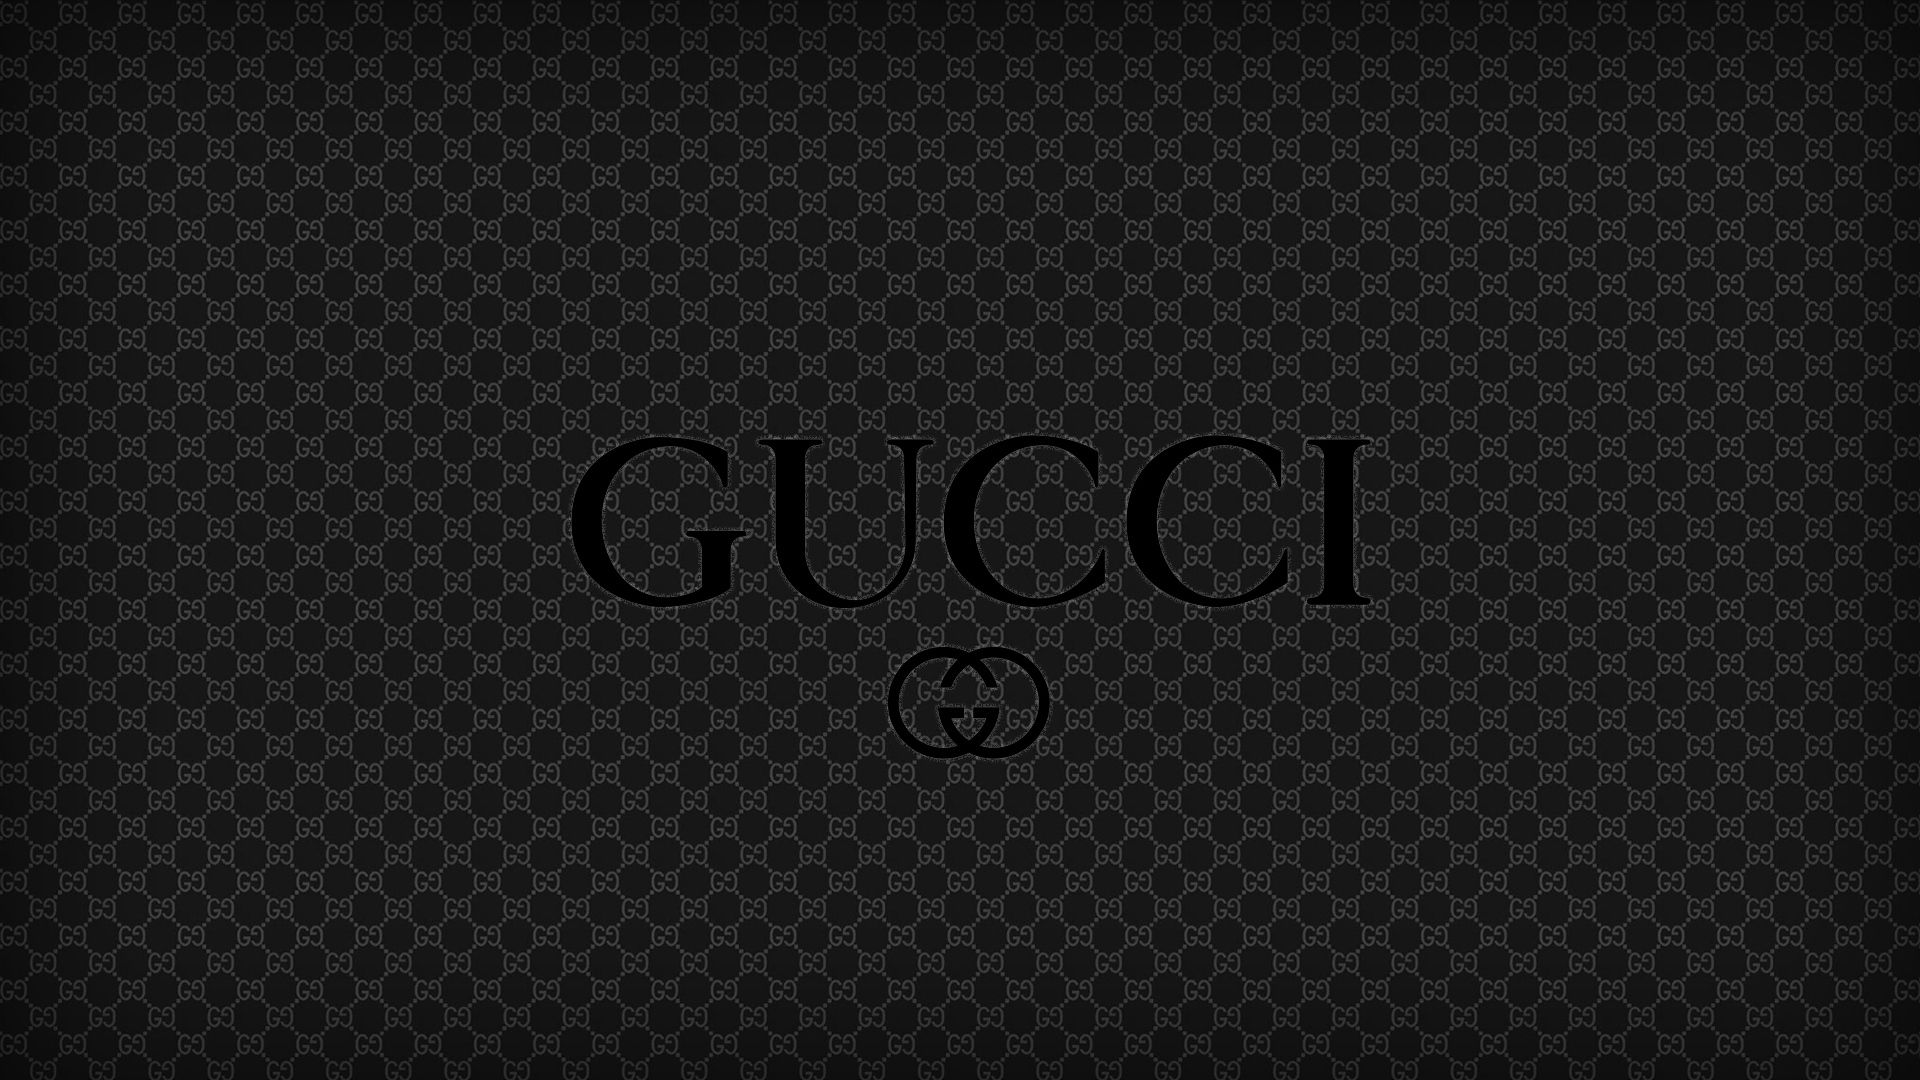 Gucci Wallpaper. Gucci Dope Wallpaper, Gucci Flip Flops Wallpaper and Gucci Ice Cream Wallpaper